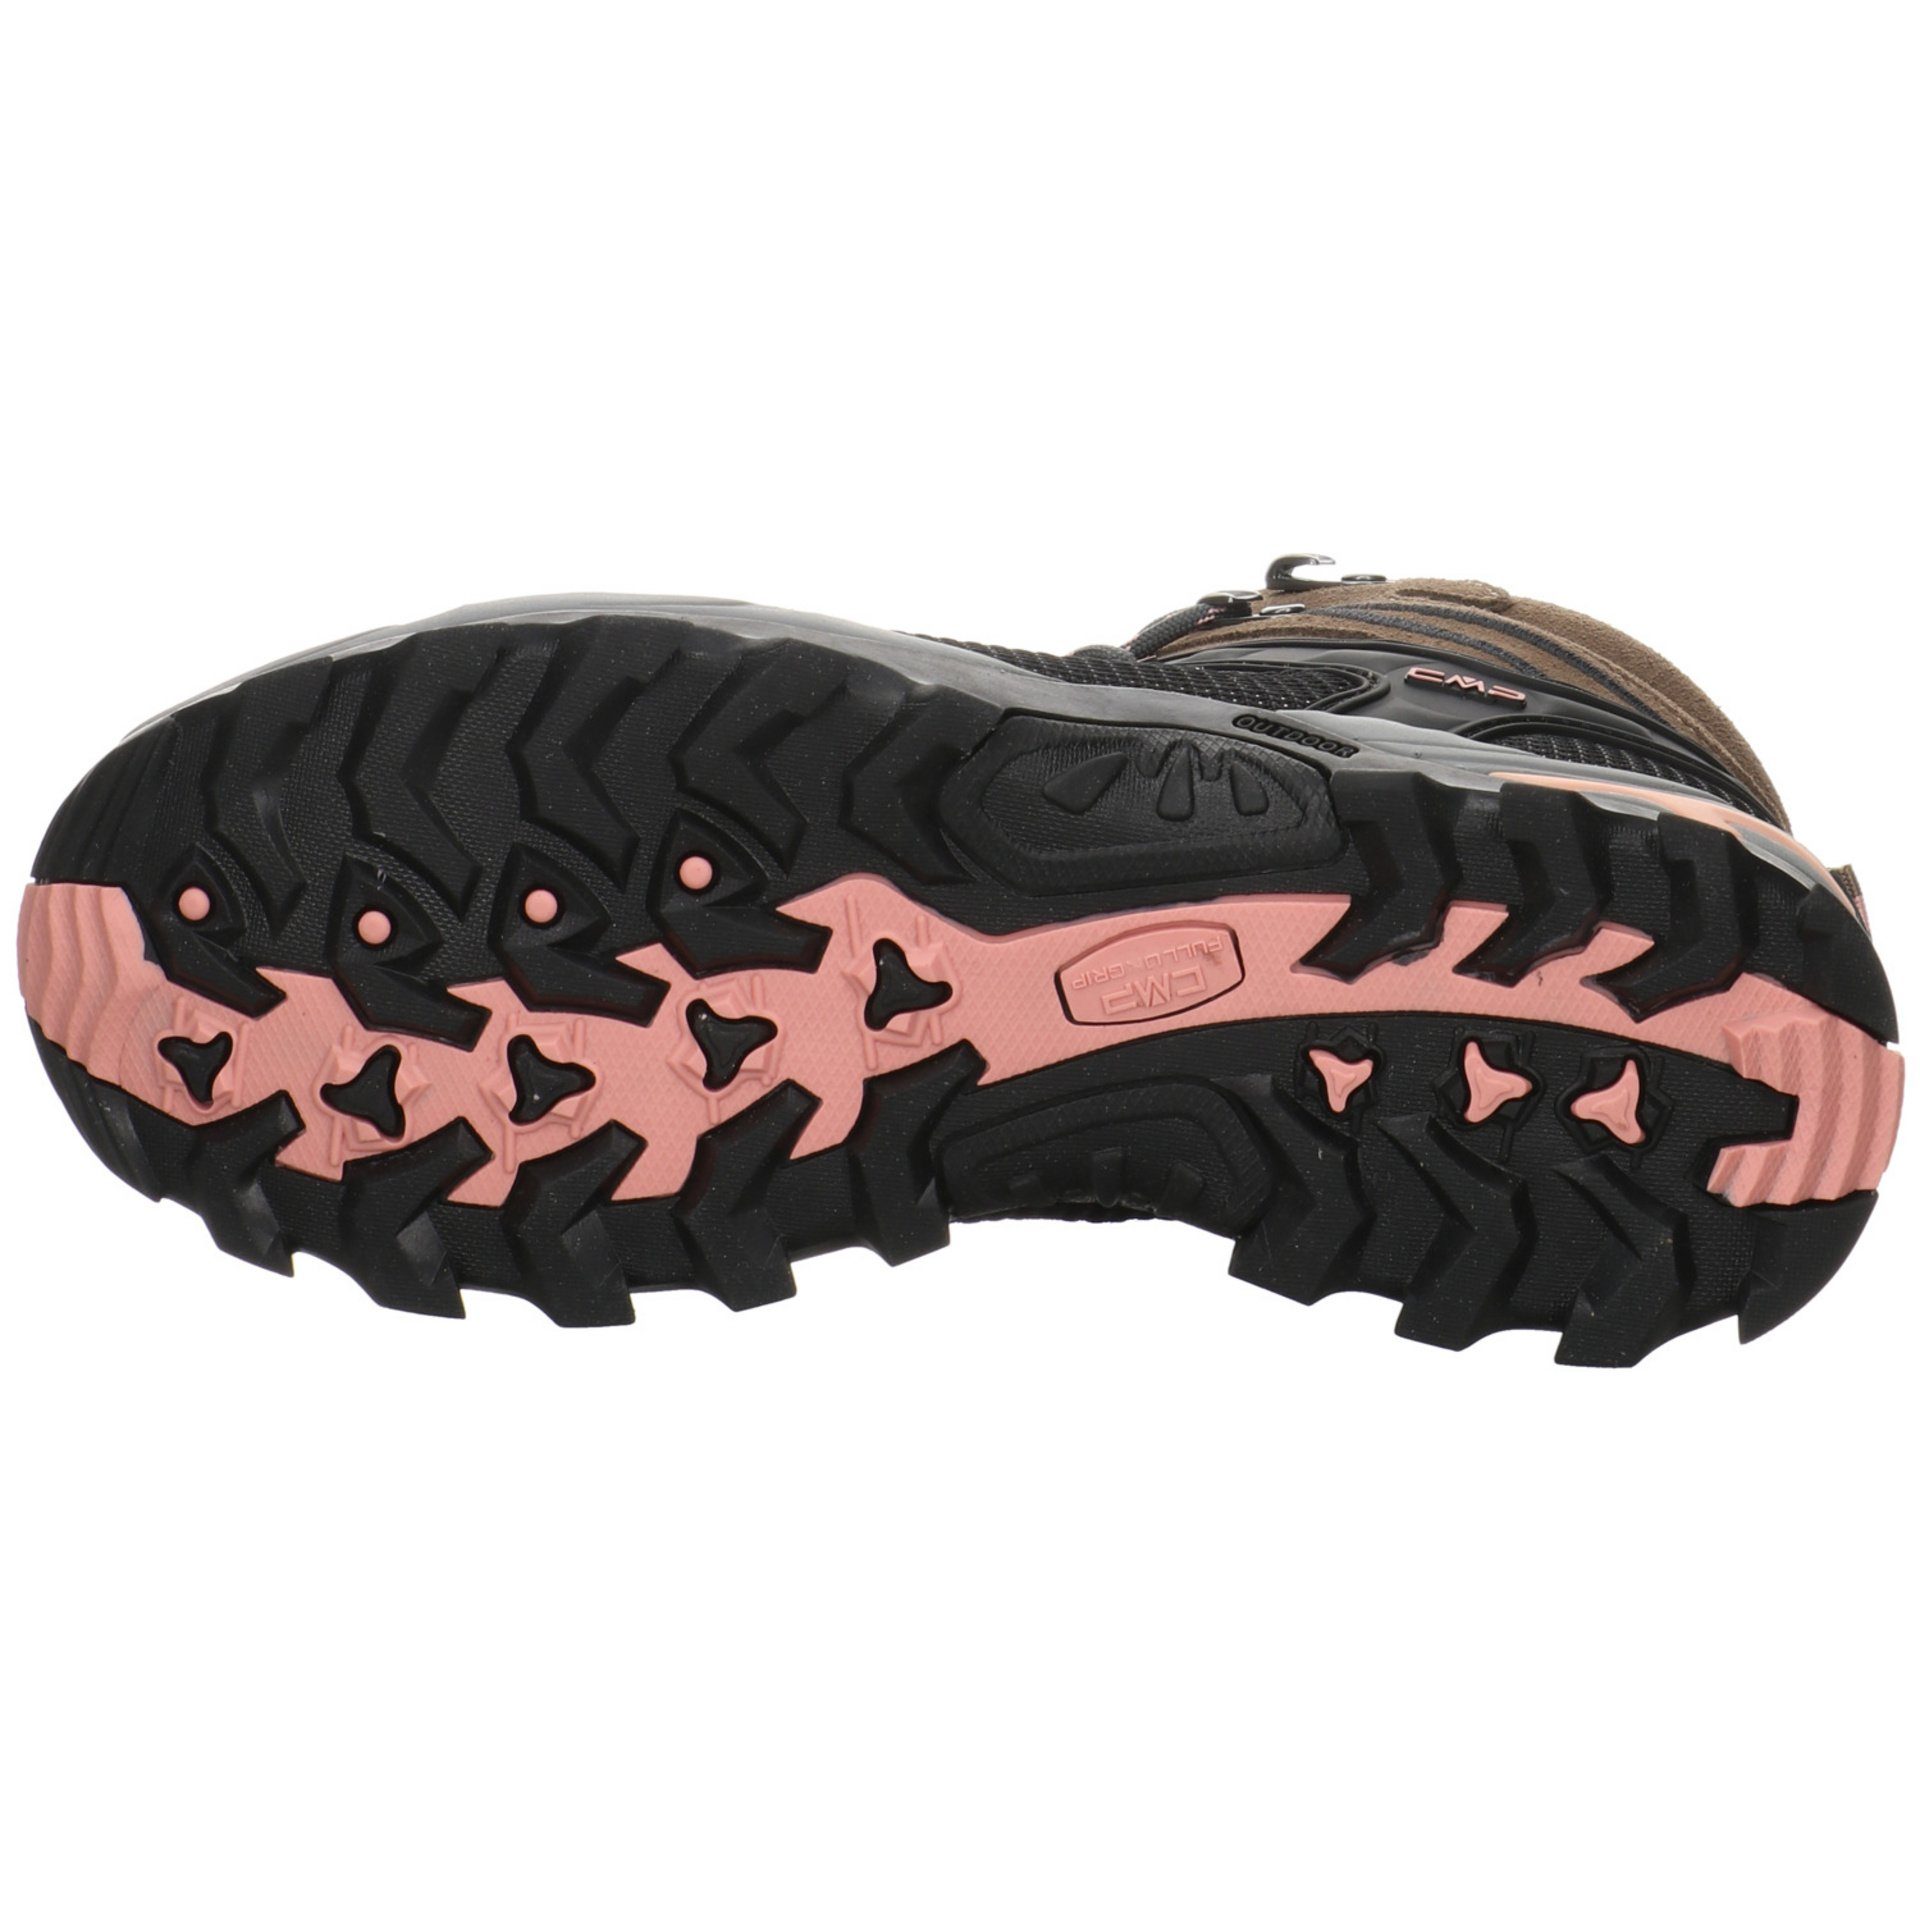 Rigel CMP Outdoorschuh Outdoor Schuhe CENERE Leder-/Textilkombination Mid Damen Outdoorschuh